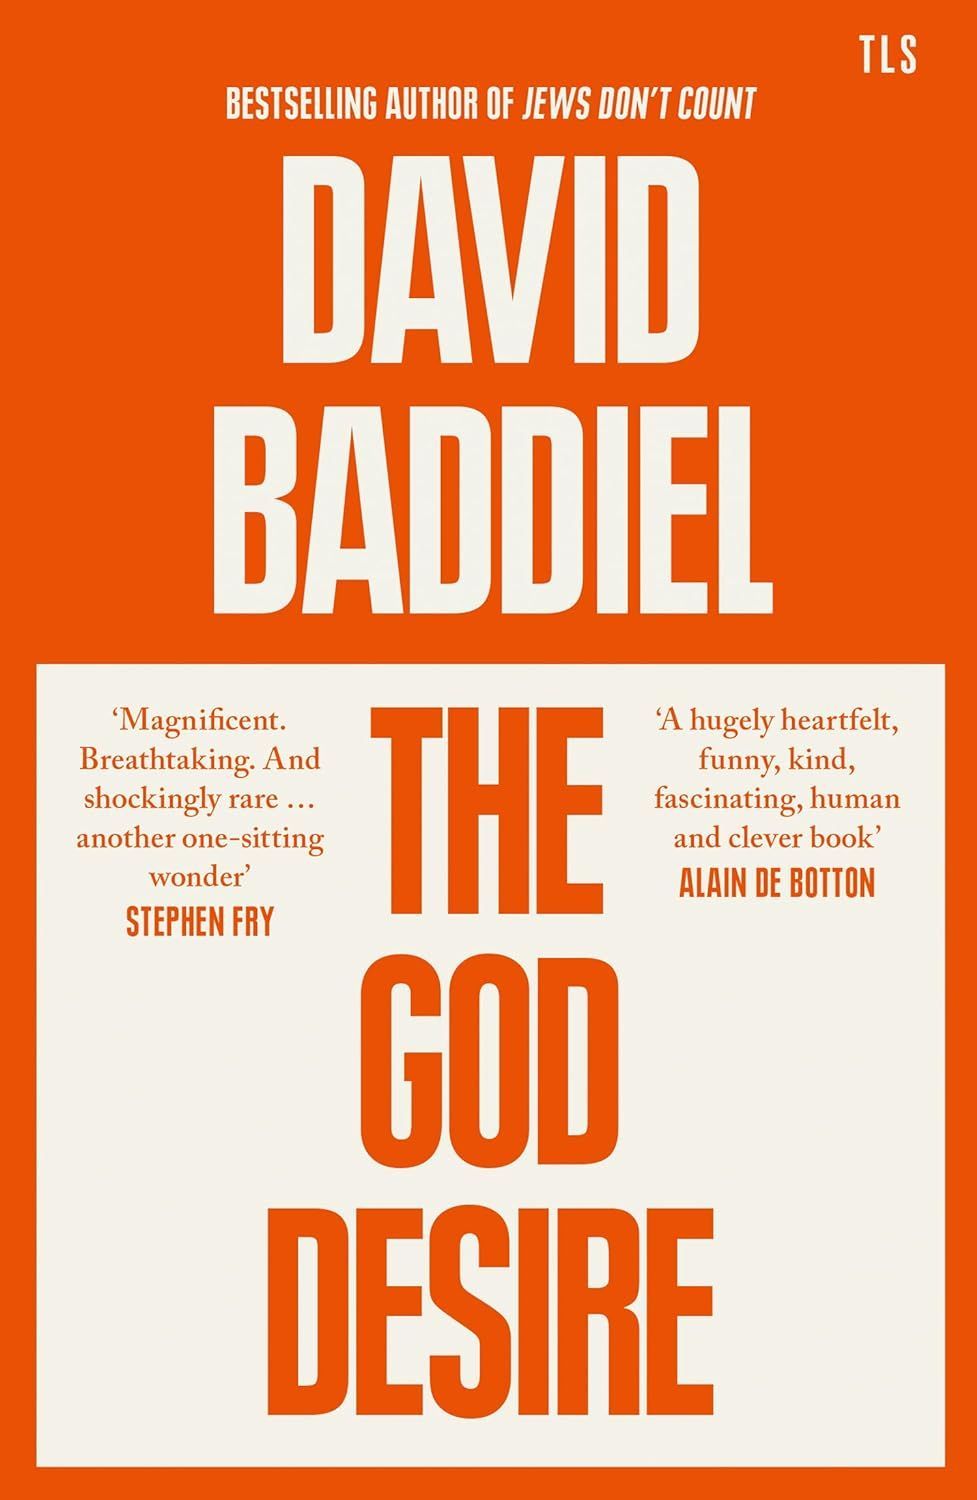 Is Laughter All We’ve Got? On David Baddiel’s “The God Desire”